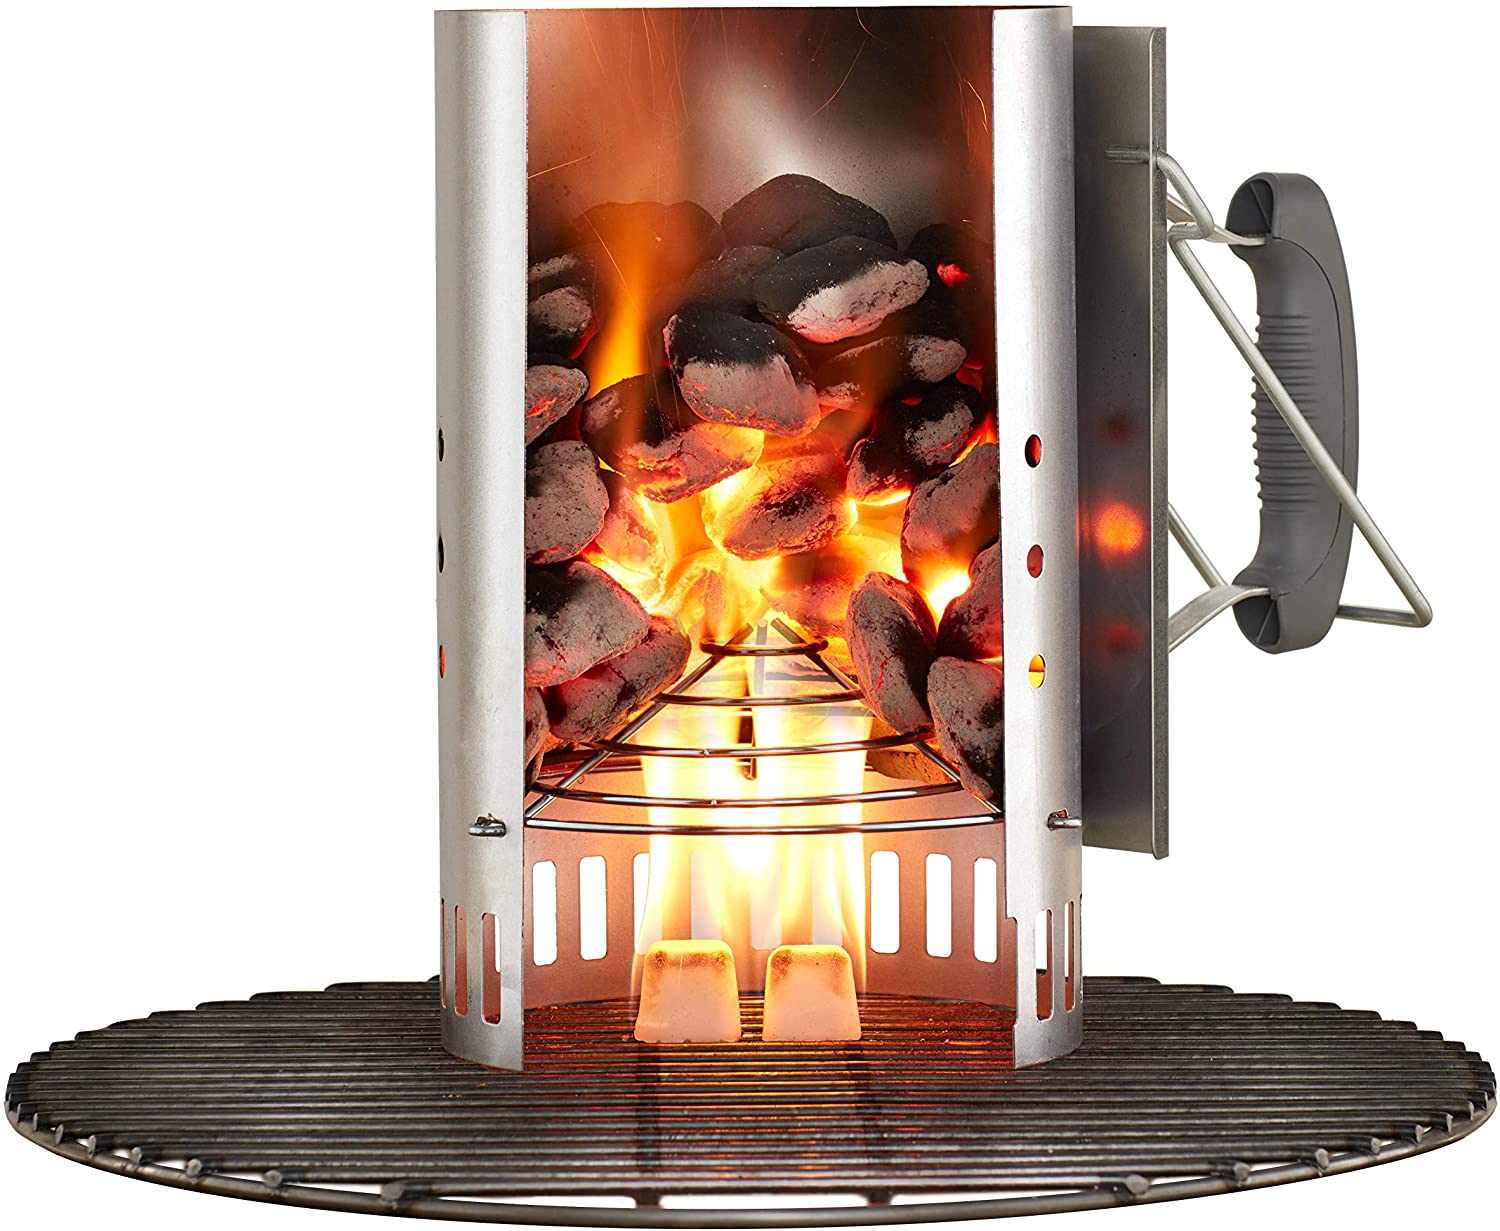 Weber Rapidfire  chimney starter 7416. - e4cents